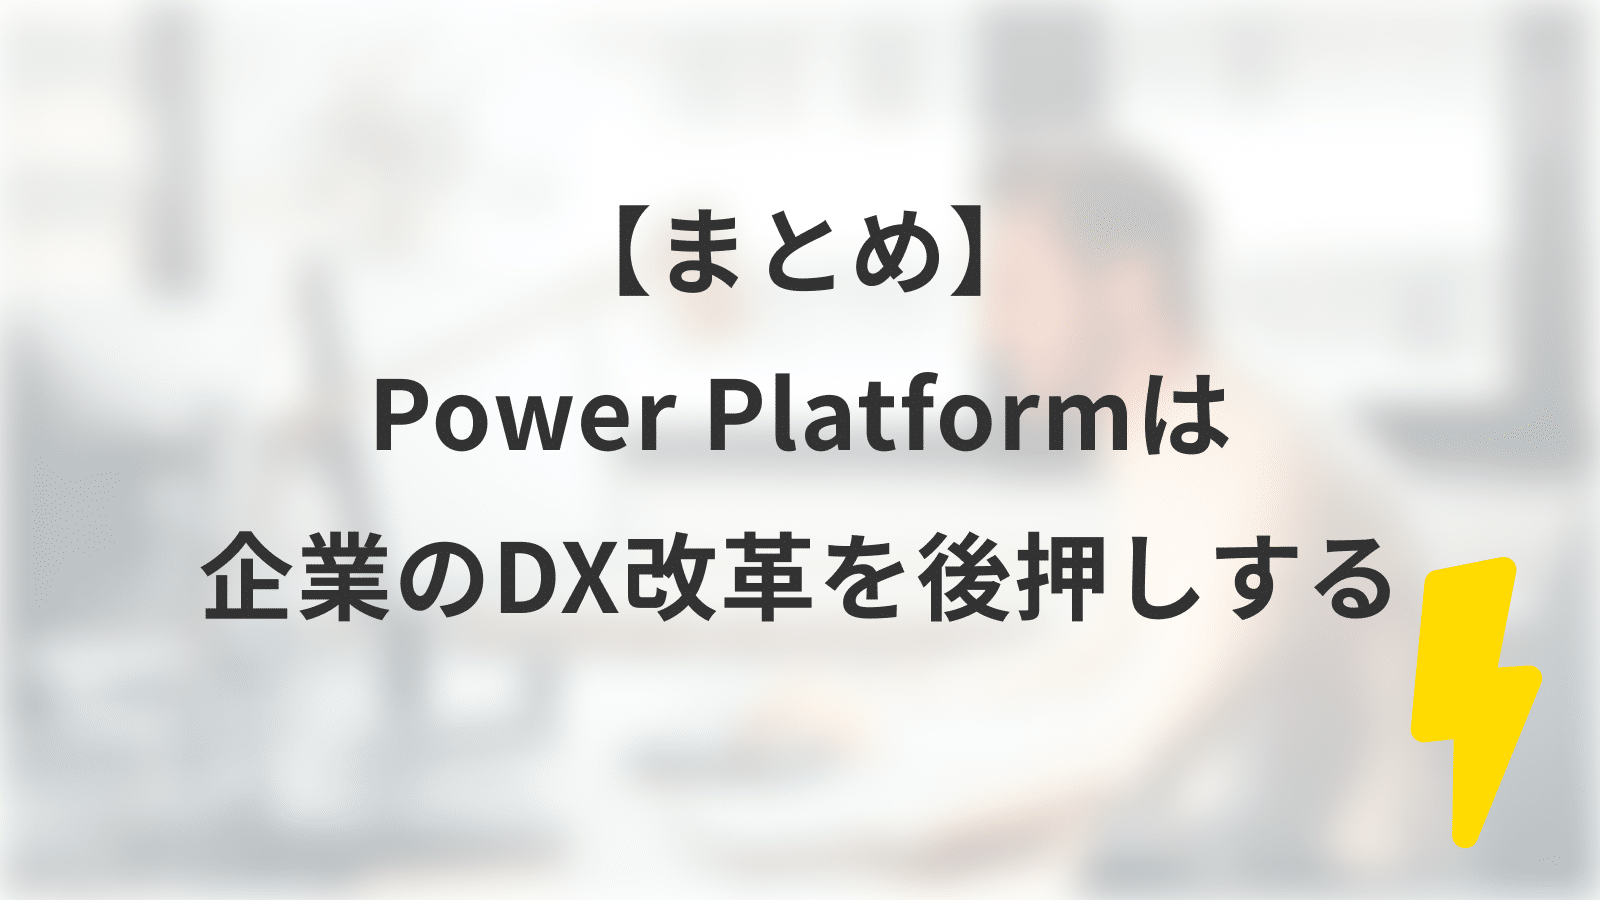 【まとめ】Power Platformは企業のDX改革を後押しする